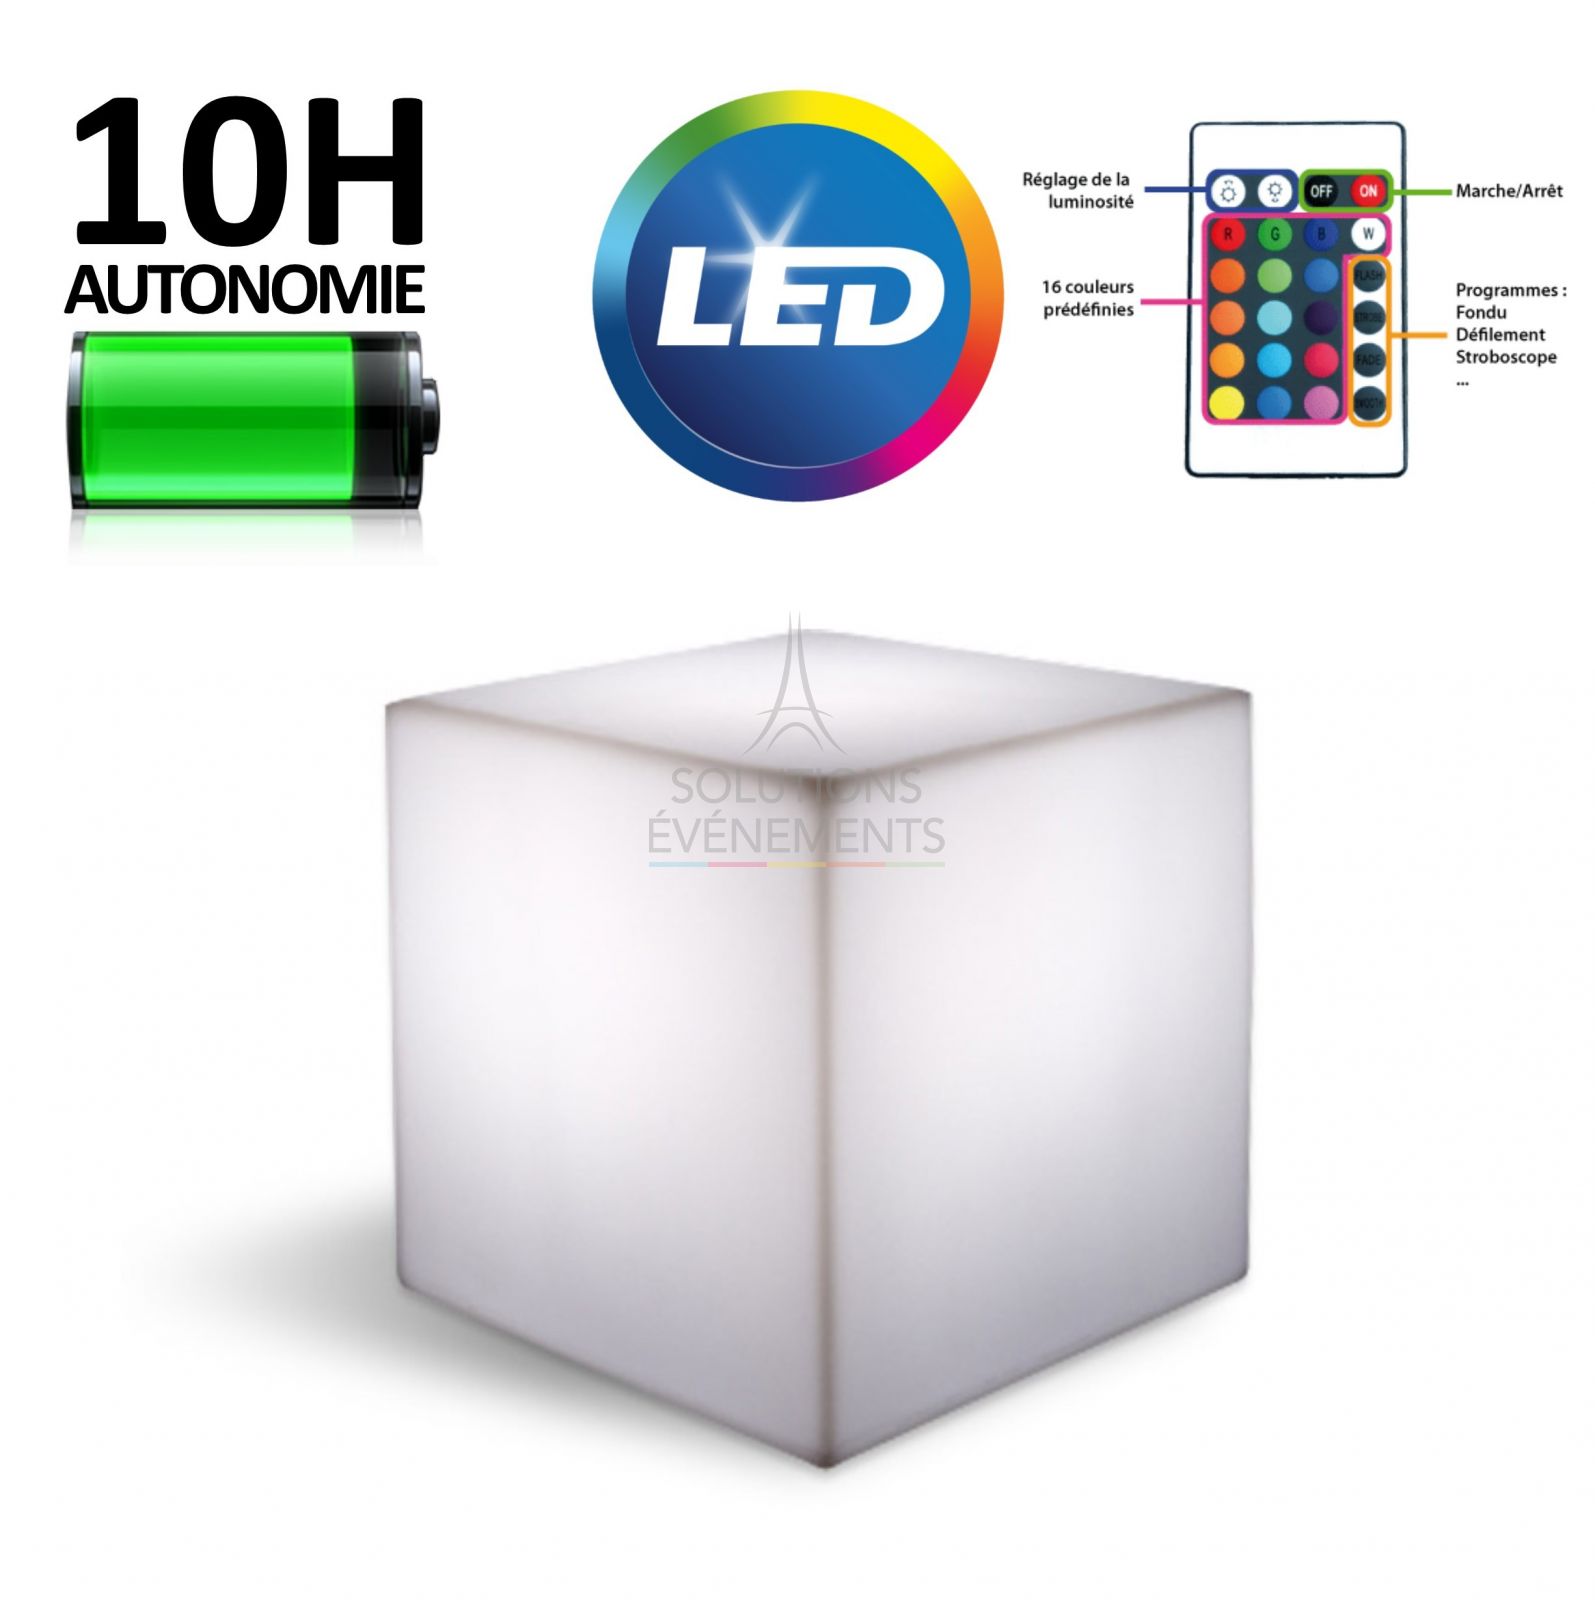 Location de cubes lumineux 40x40x40cm avec eclairage LED sur batterie